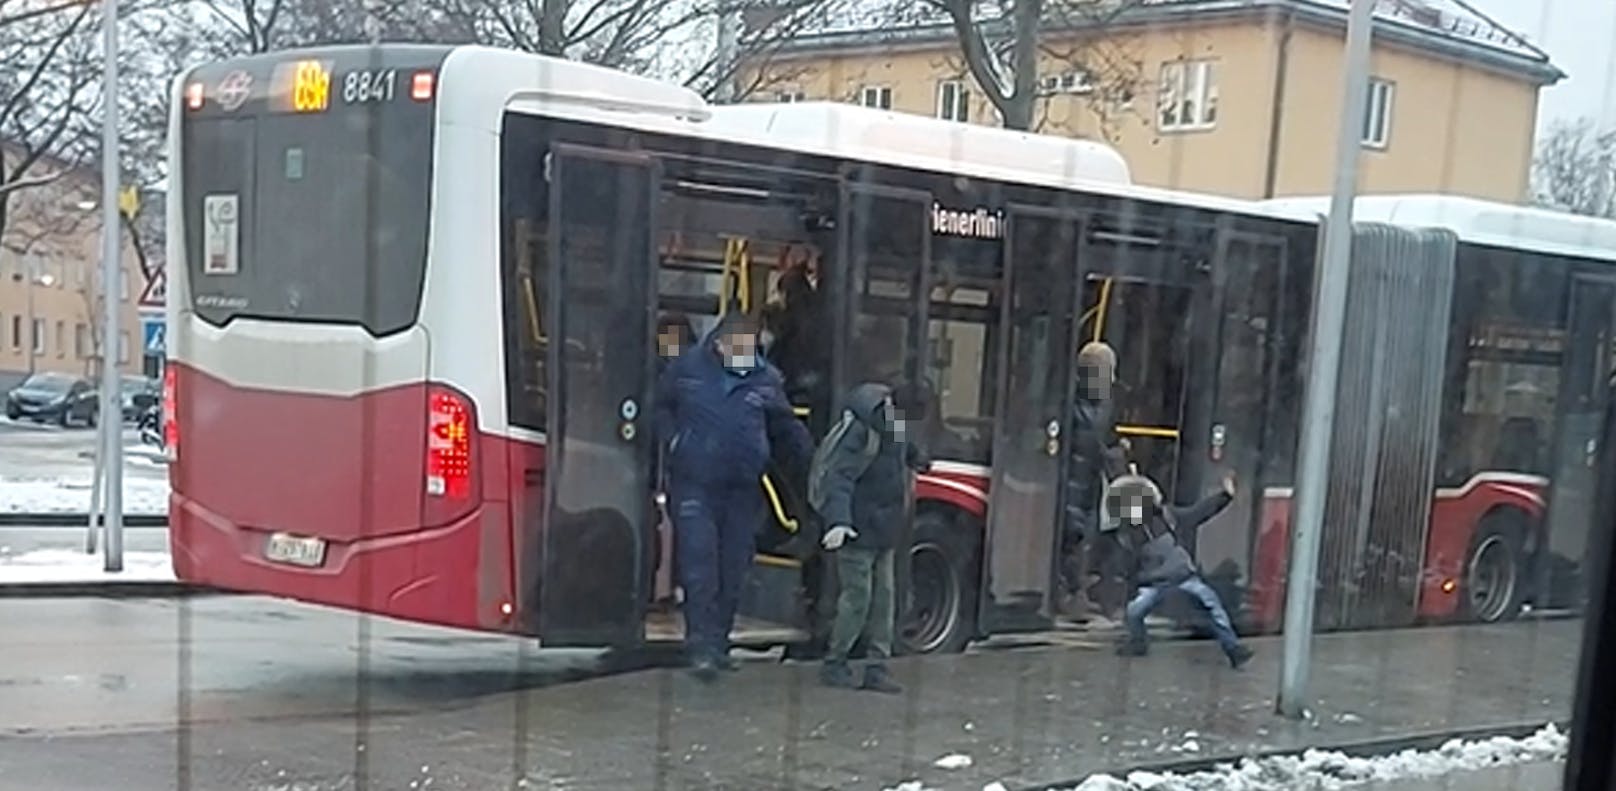 Diesen Fahrgästen fiel der Ausstieg aus dem Bus schwer